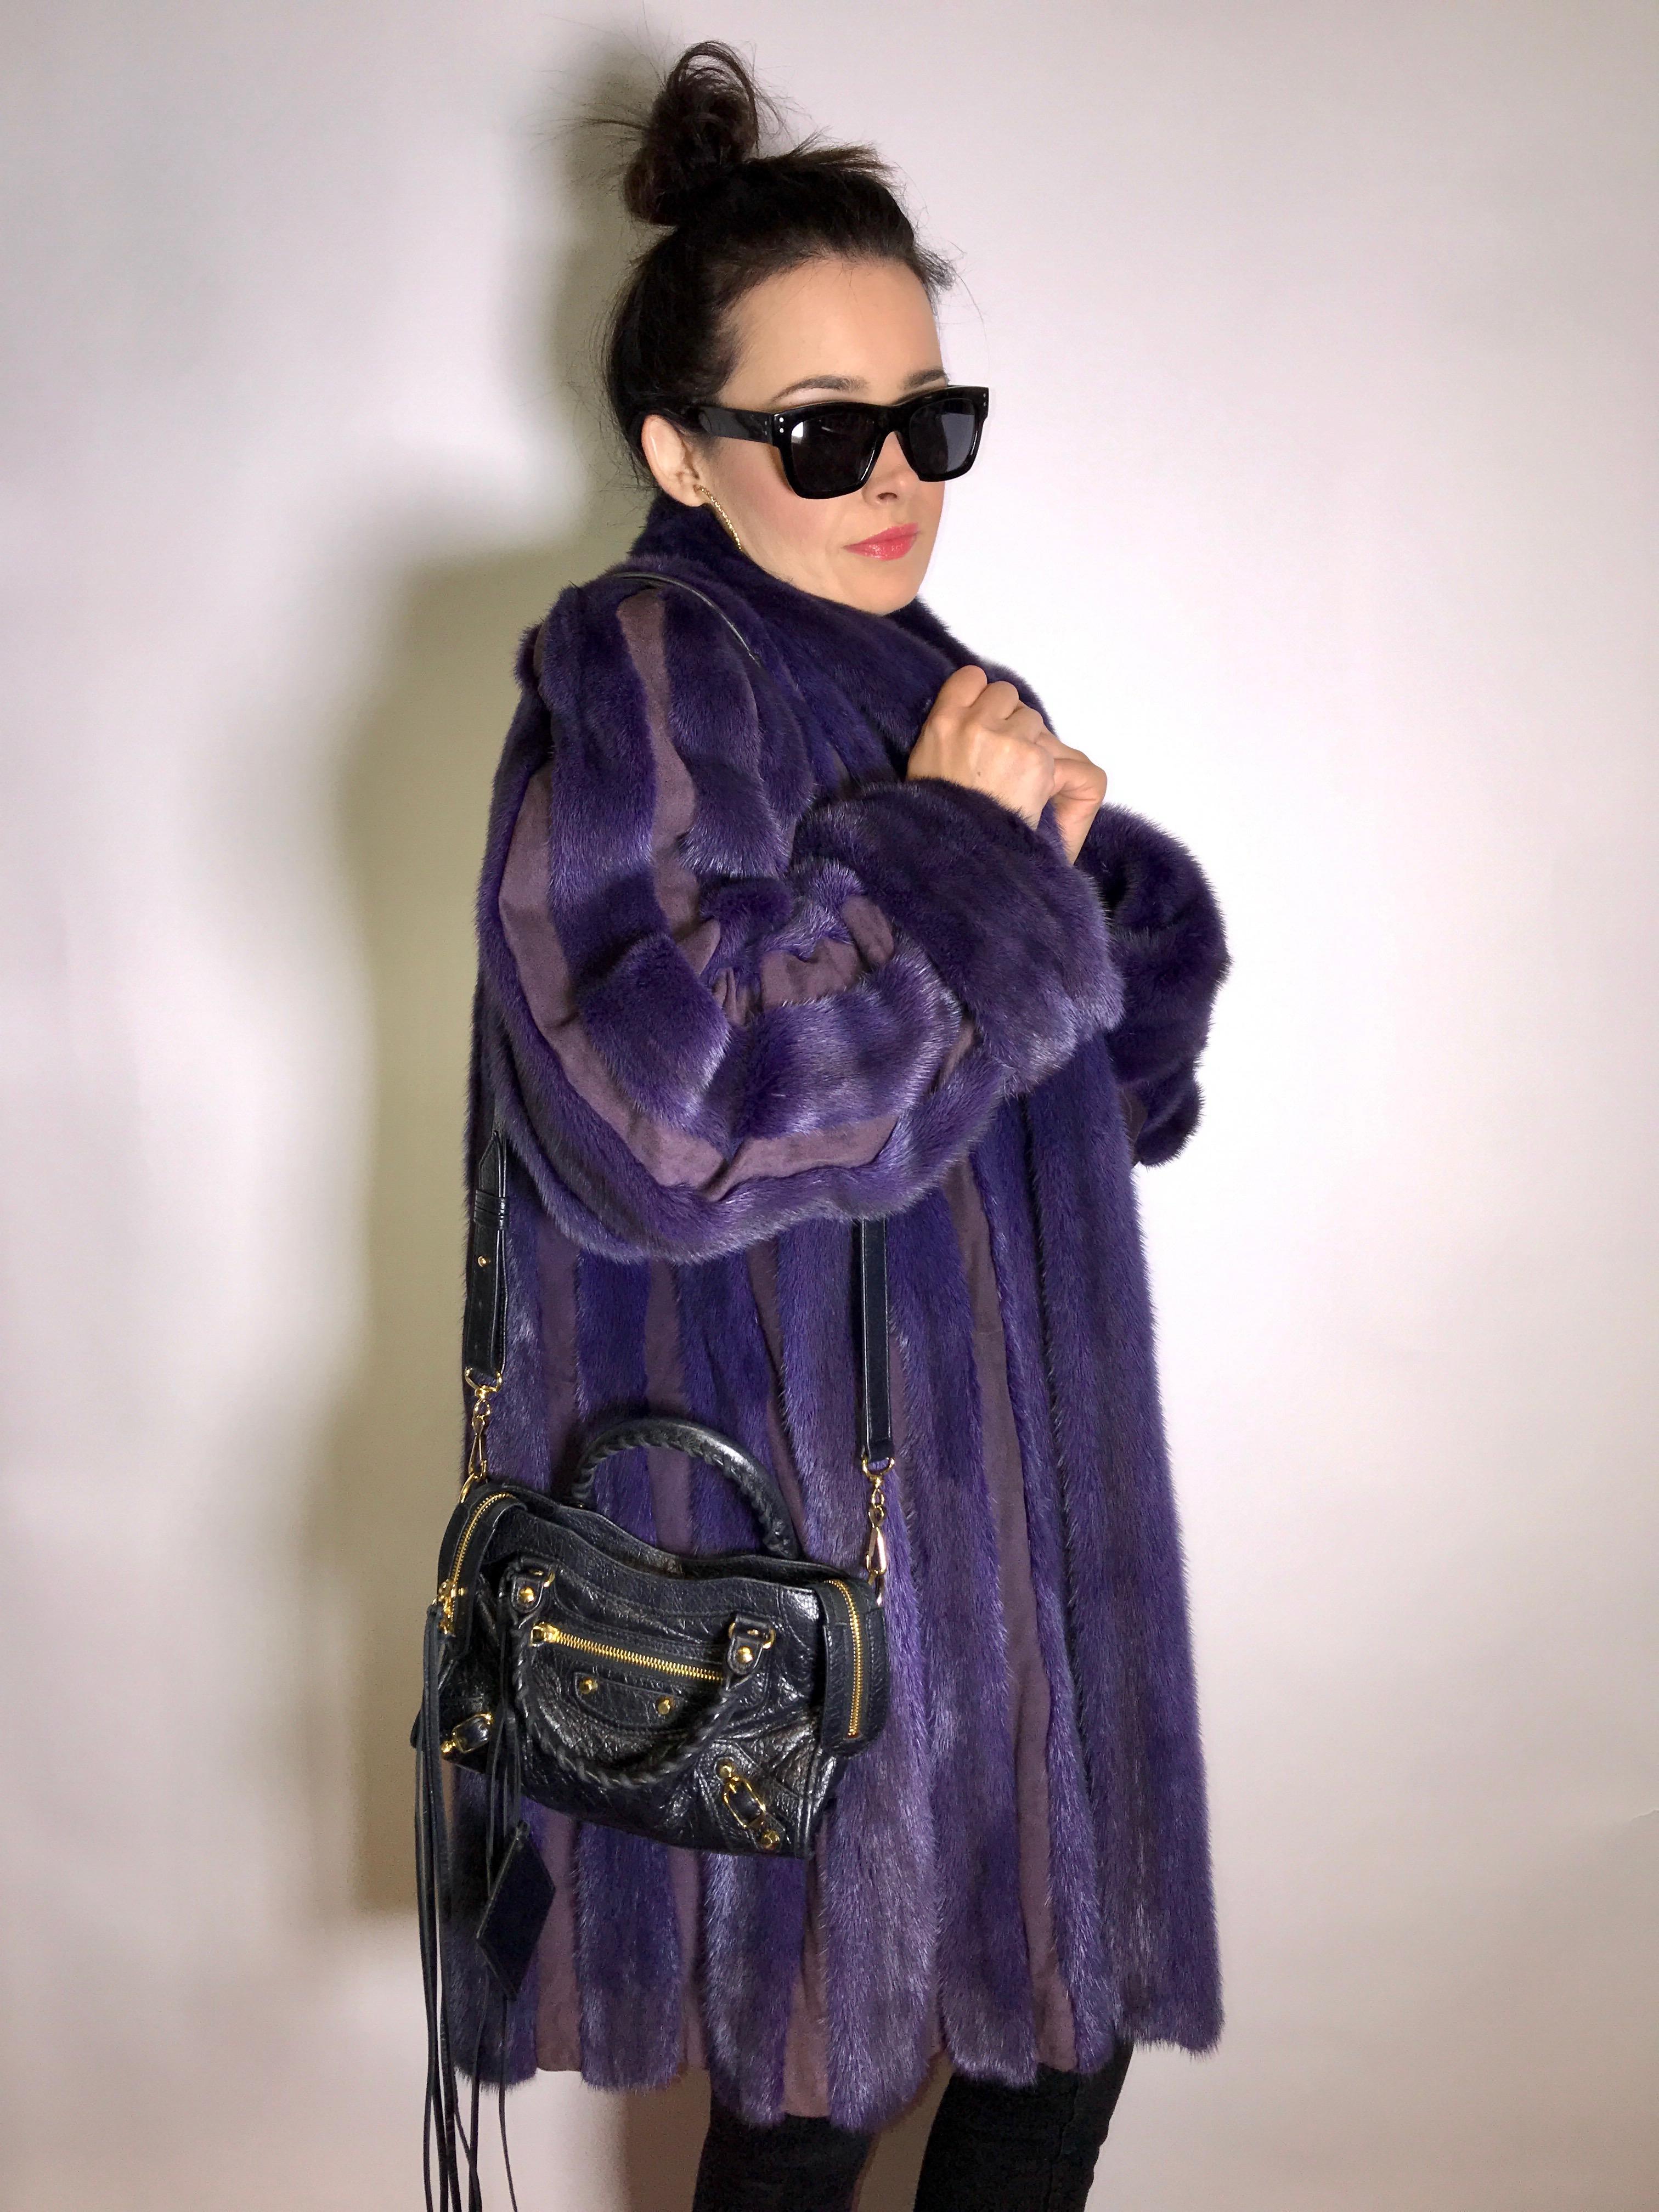 Silk mink fur 3/4 jacket / coat by 